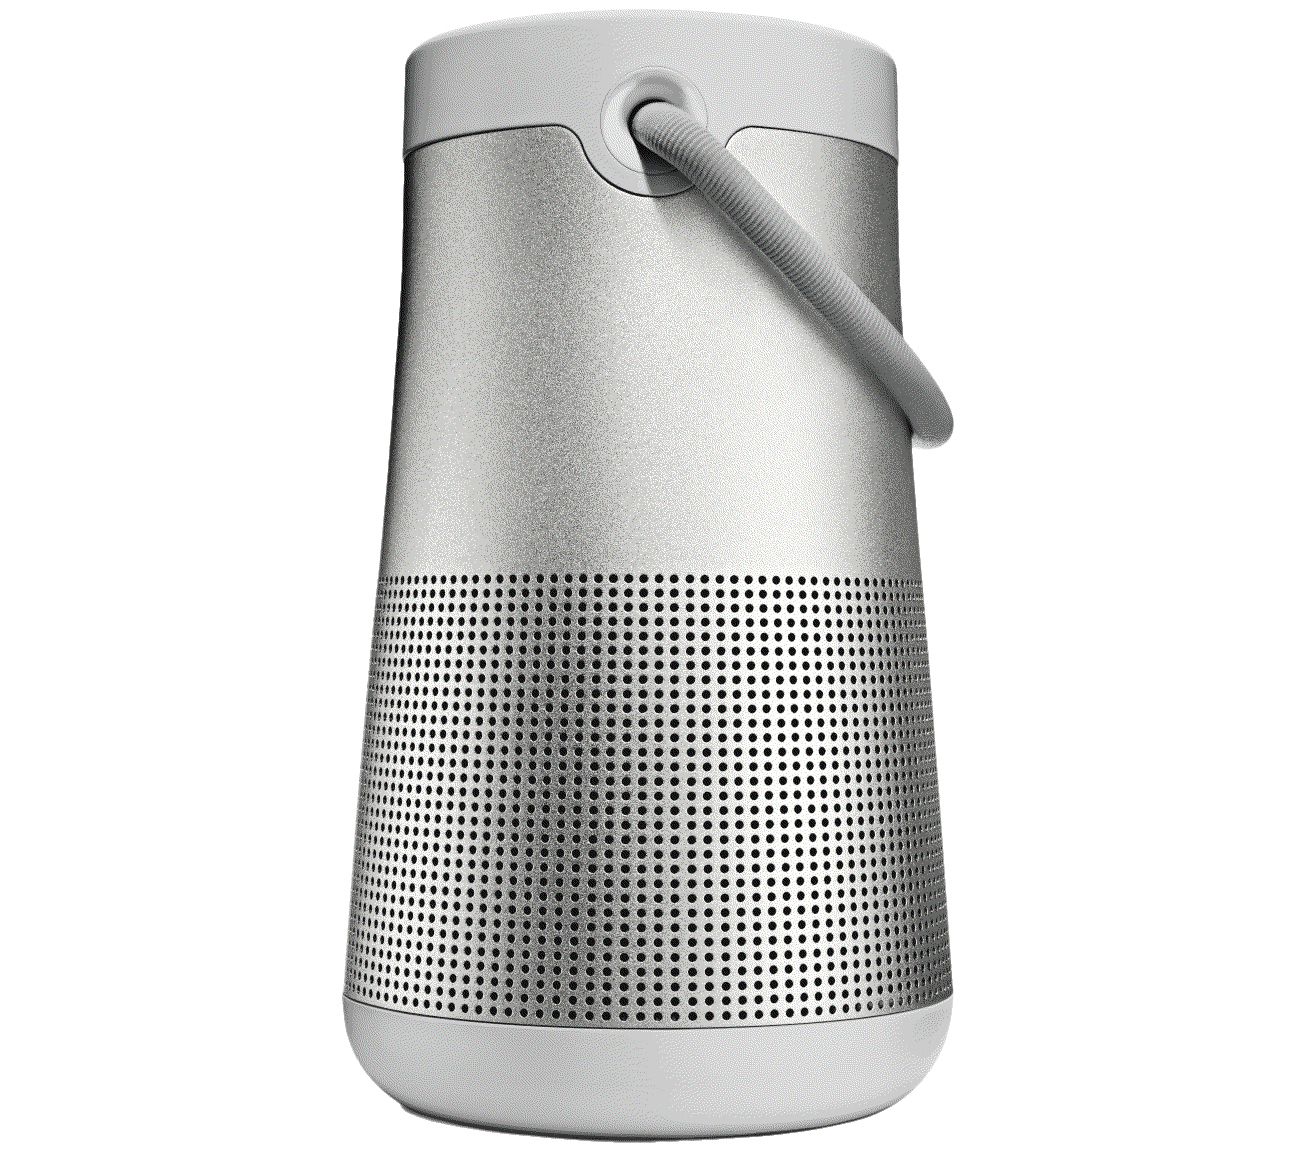 Installeren Aanmoediging schreeuw Bose SoundLink Revolve Plus Wireless Speaker System - QVC.com